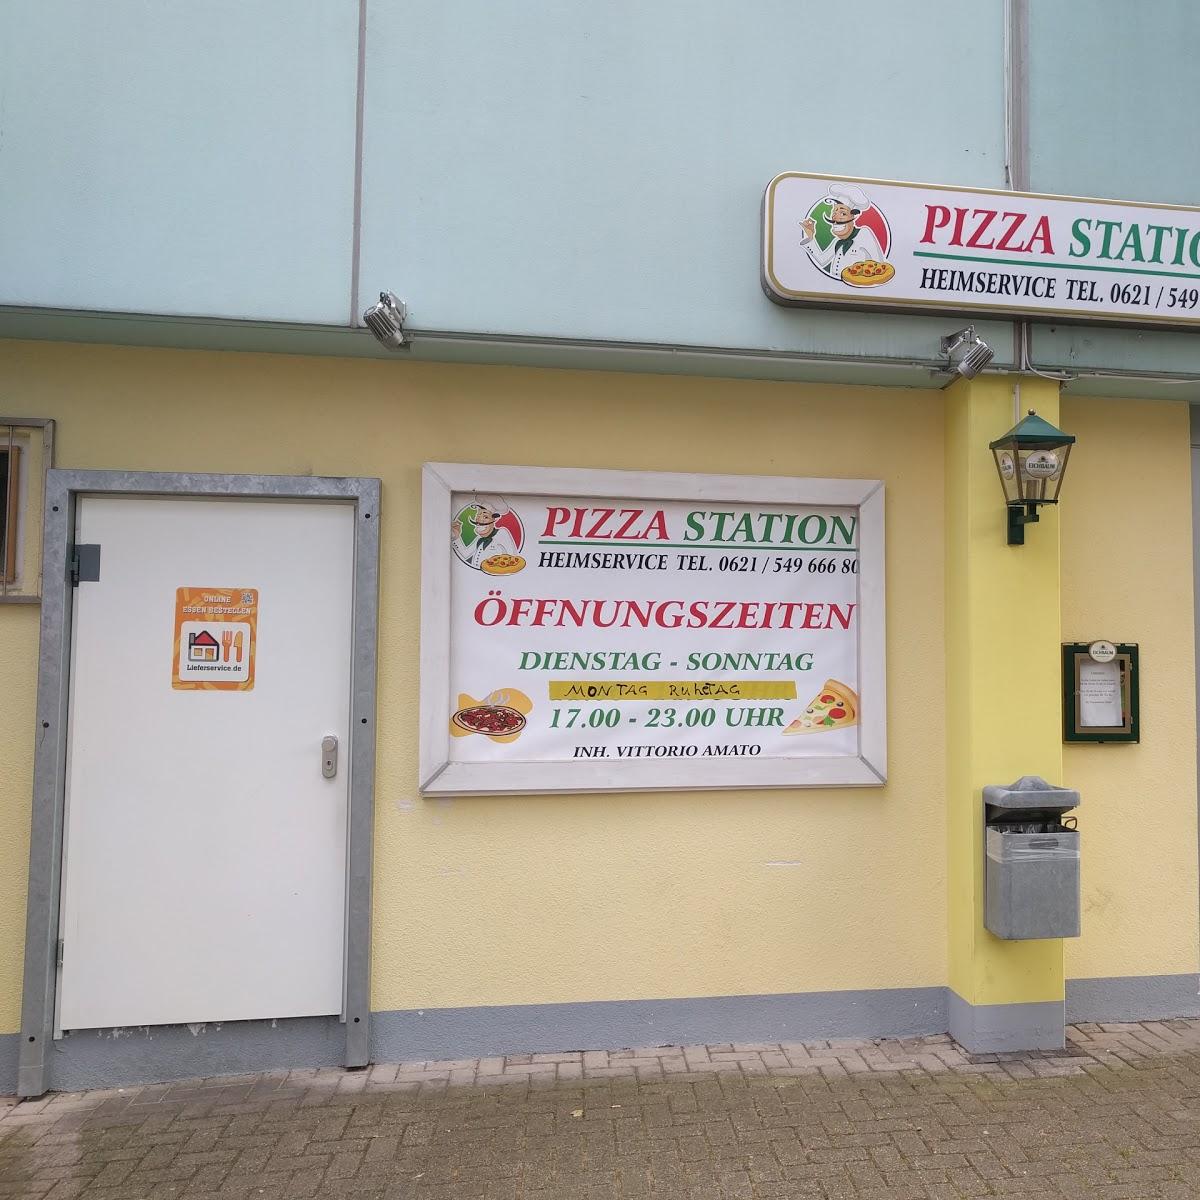 Restaurant "Pizza Station" in Ludwigshafen am Rhein